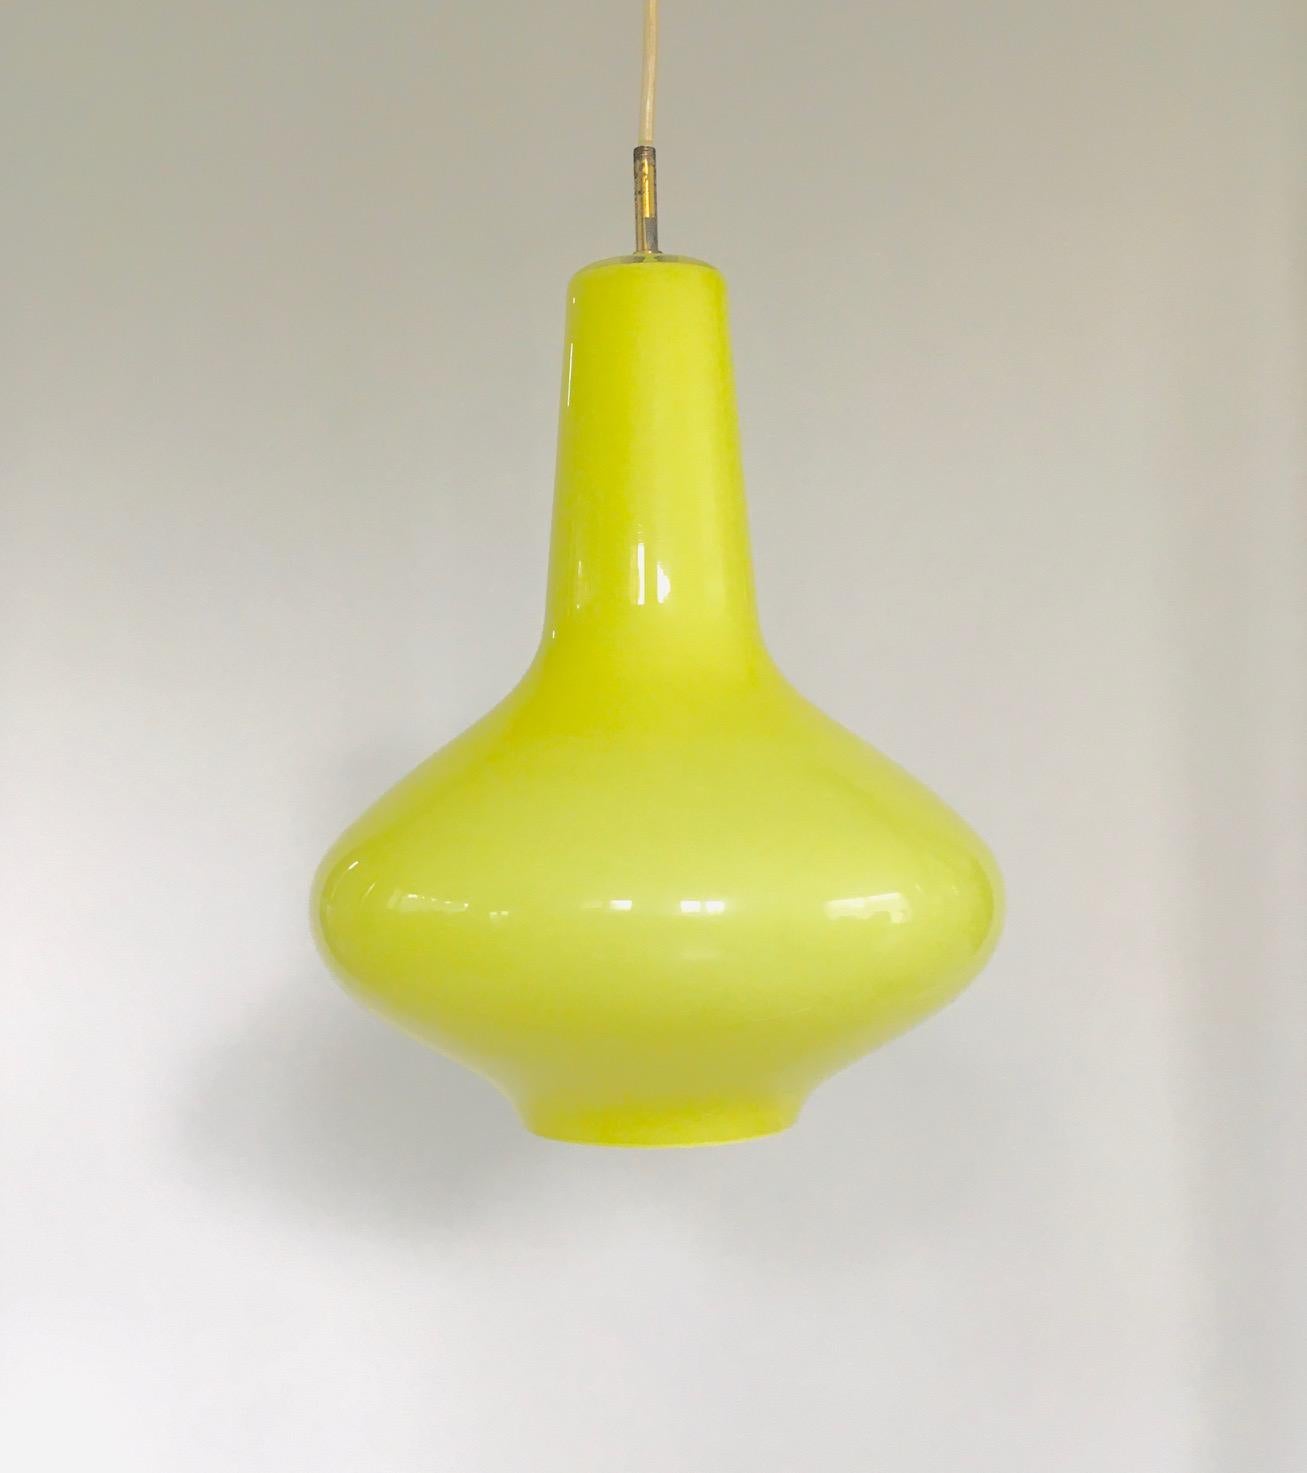 Vintage Midcentury Modern Design Gelbe Opalglas-Hängeleuchte entworfen von Massimo Vignelli für Venini, Murano, Italien 1950er Jahre. Handgeblasenes Opalglas von Venini. Sie hat ein kalkgelbes Glas mit allen Originalteilen. Die Drähte wurden